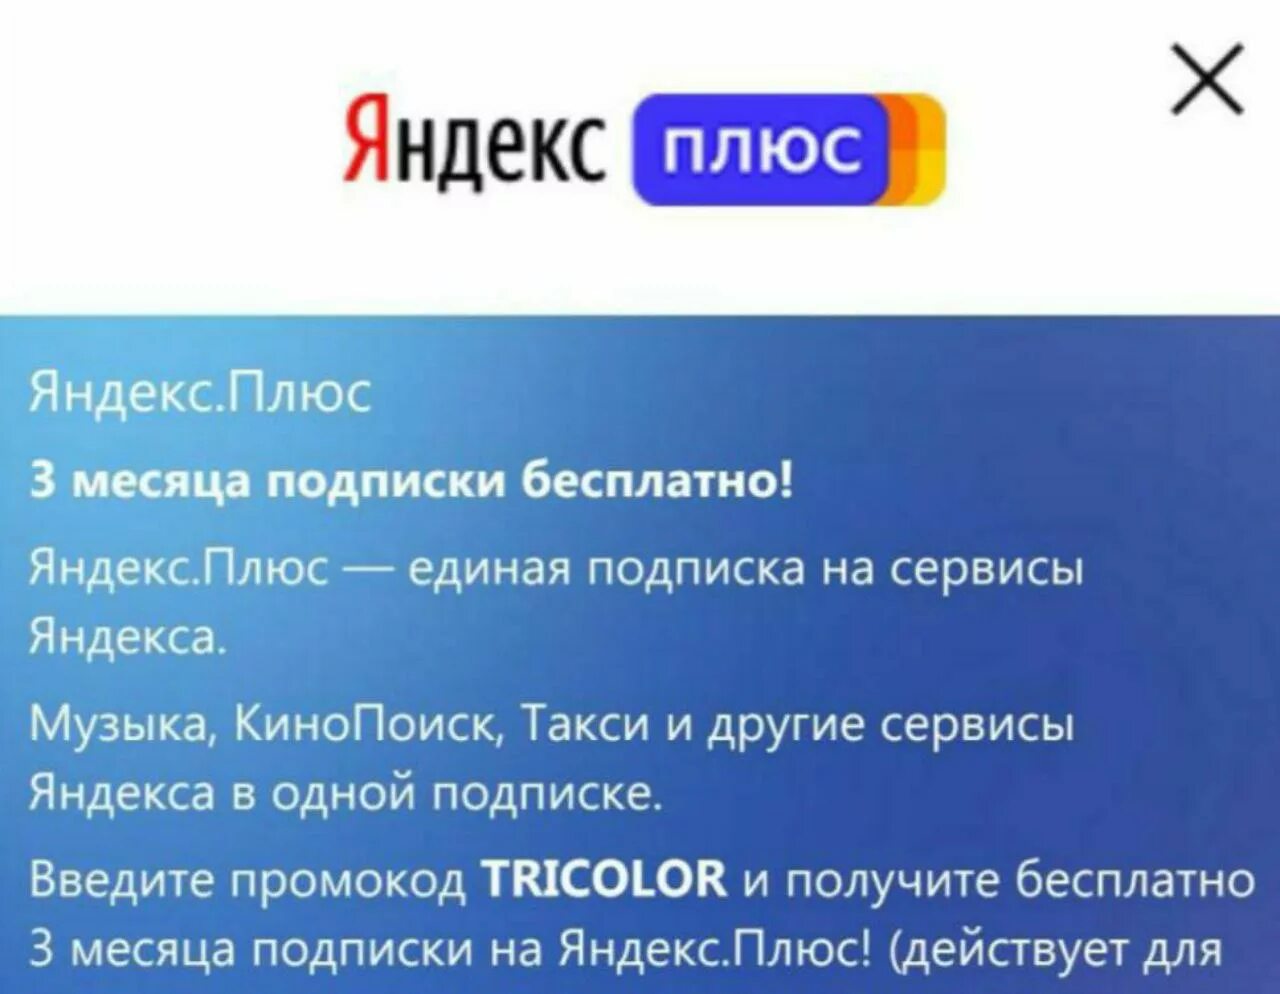 Активируй подписку с телефона. Подписка на сервисы Яндекса.